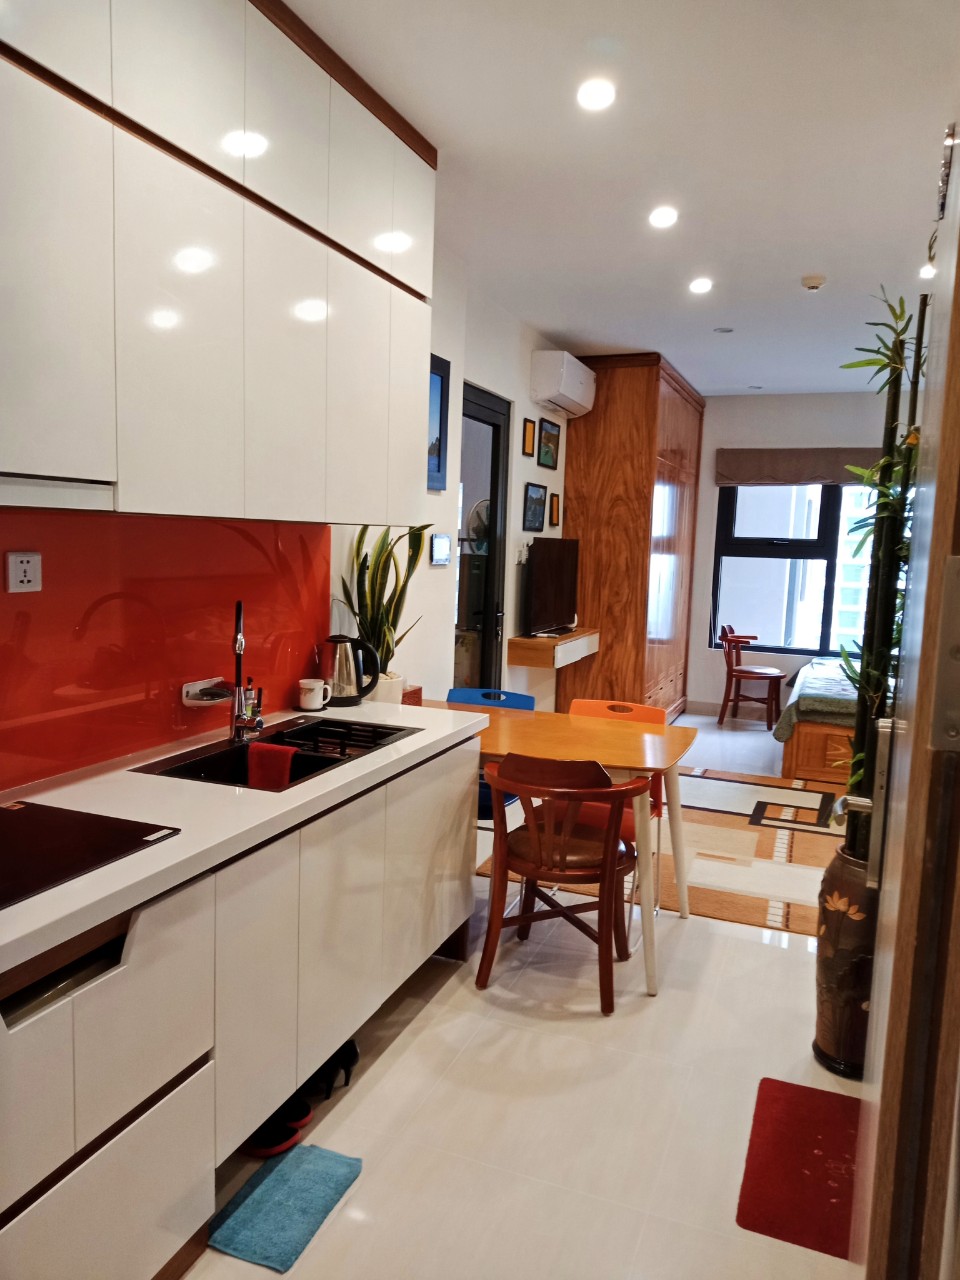 Cho thuê căn hộ chung cư giá rẻ nhất, tại Vinhomes Smart City Tây Mỗ Đại Mỗ - LH: 096 4433 678 11362951